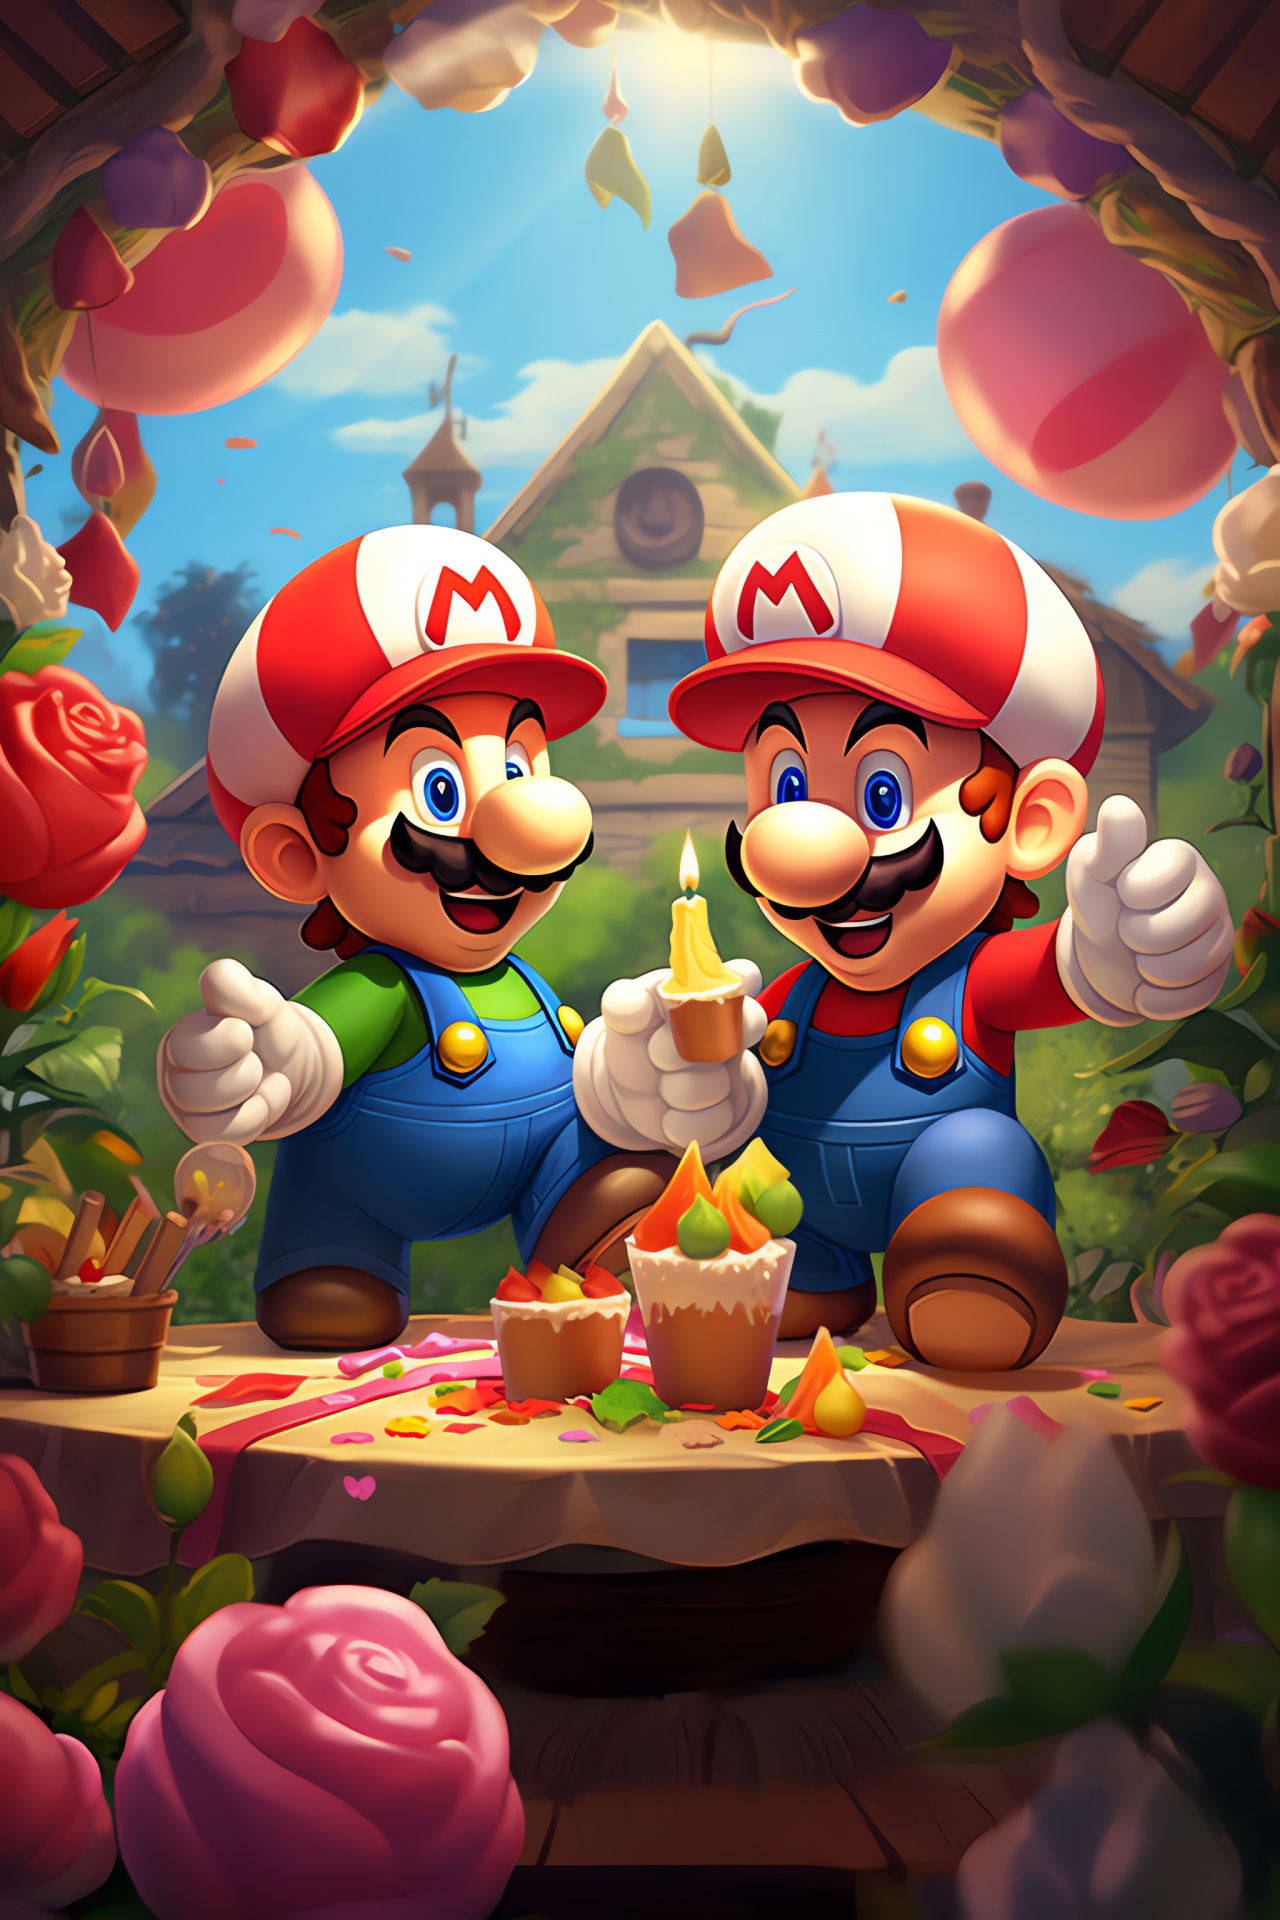 Nintendo celebration, Super Mario icons, Legendary Luigi, Iconic adventure duo, Fantasy World gala, HD Phone Image